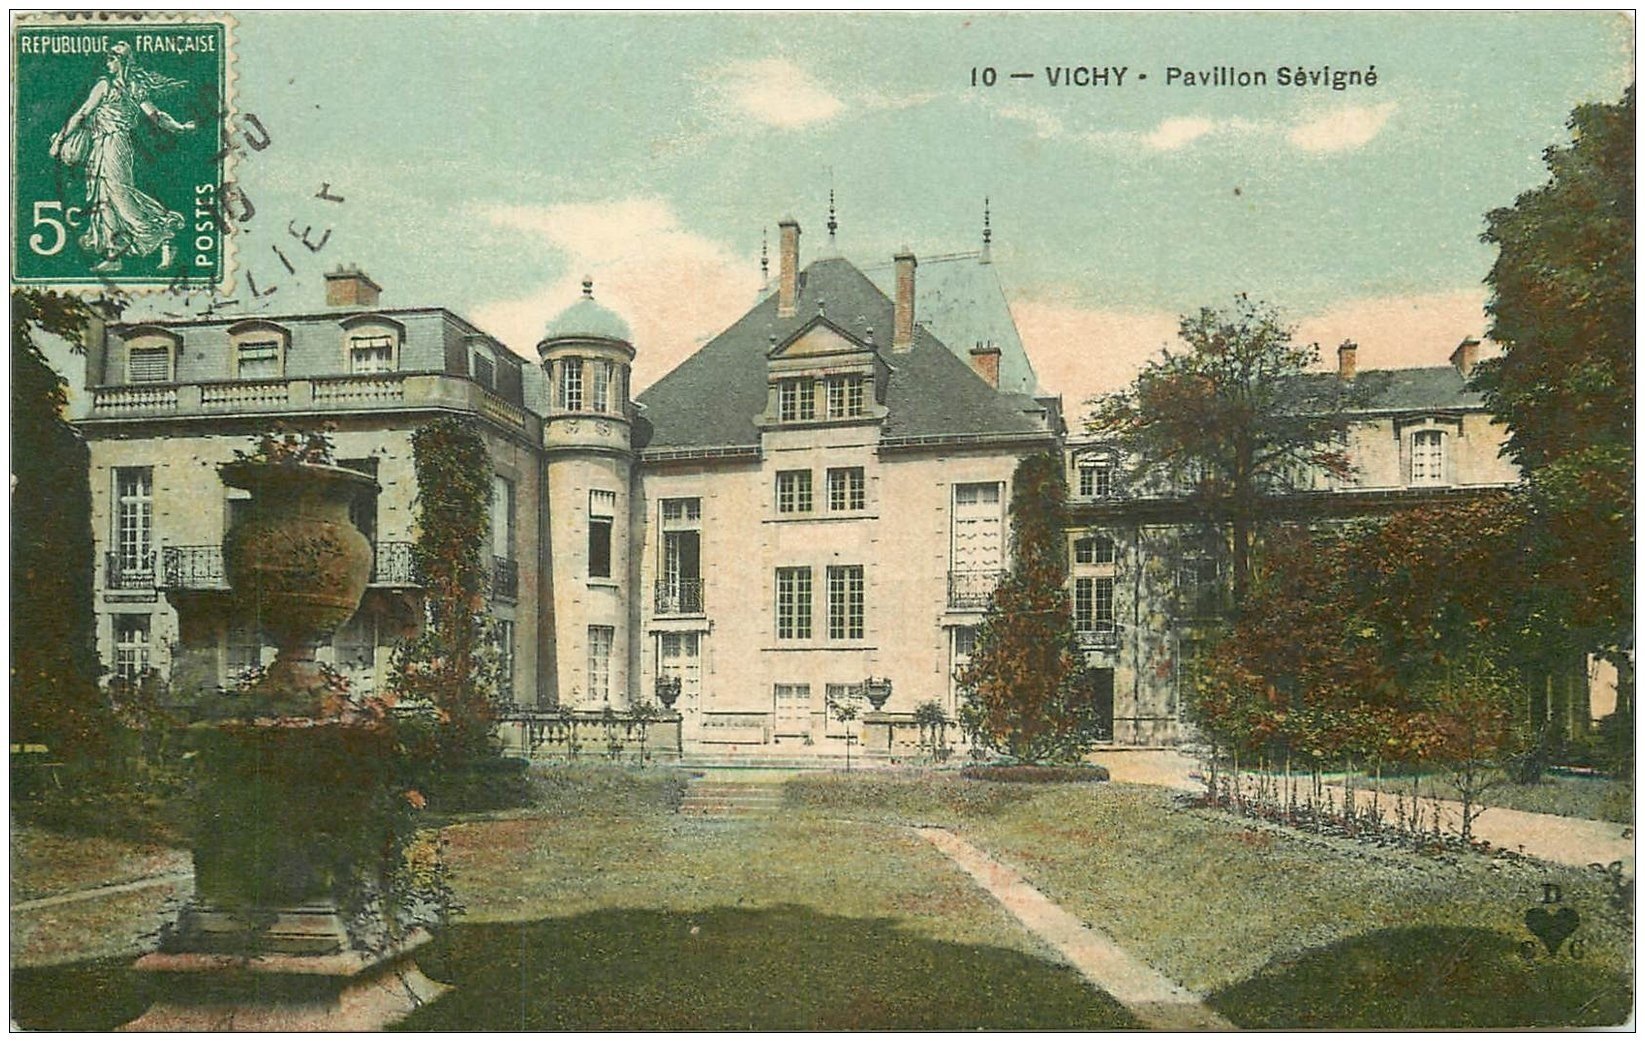 03 VICHY. Pavillon Sévigné 1910. DCC. (fine plissure)